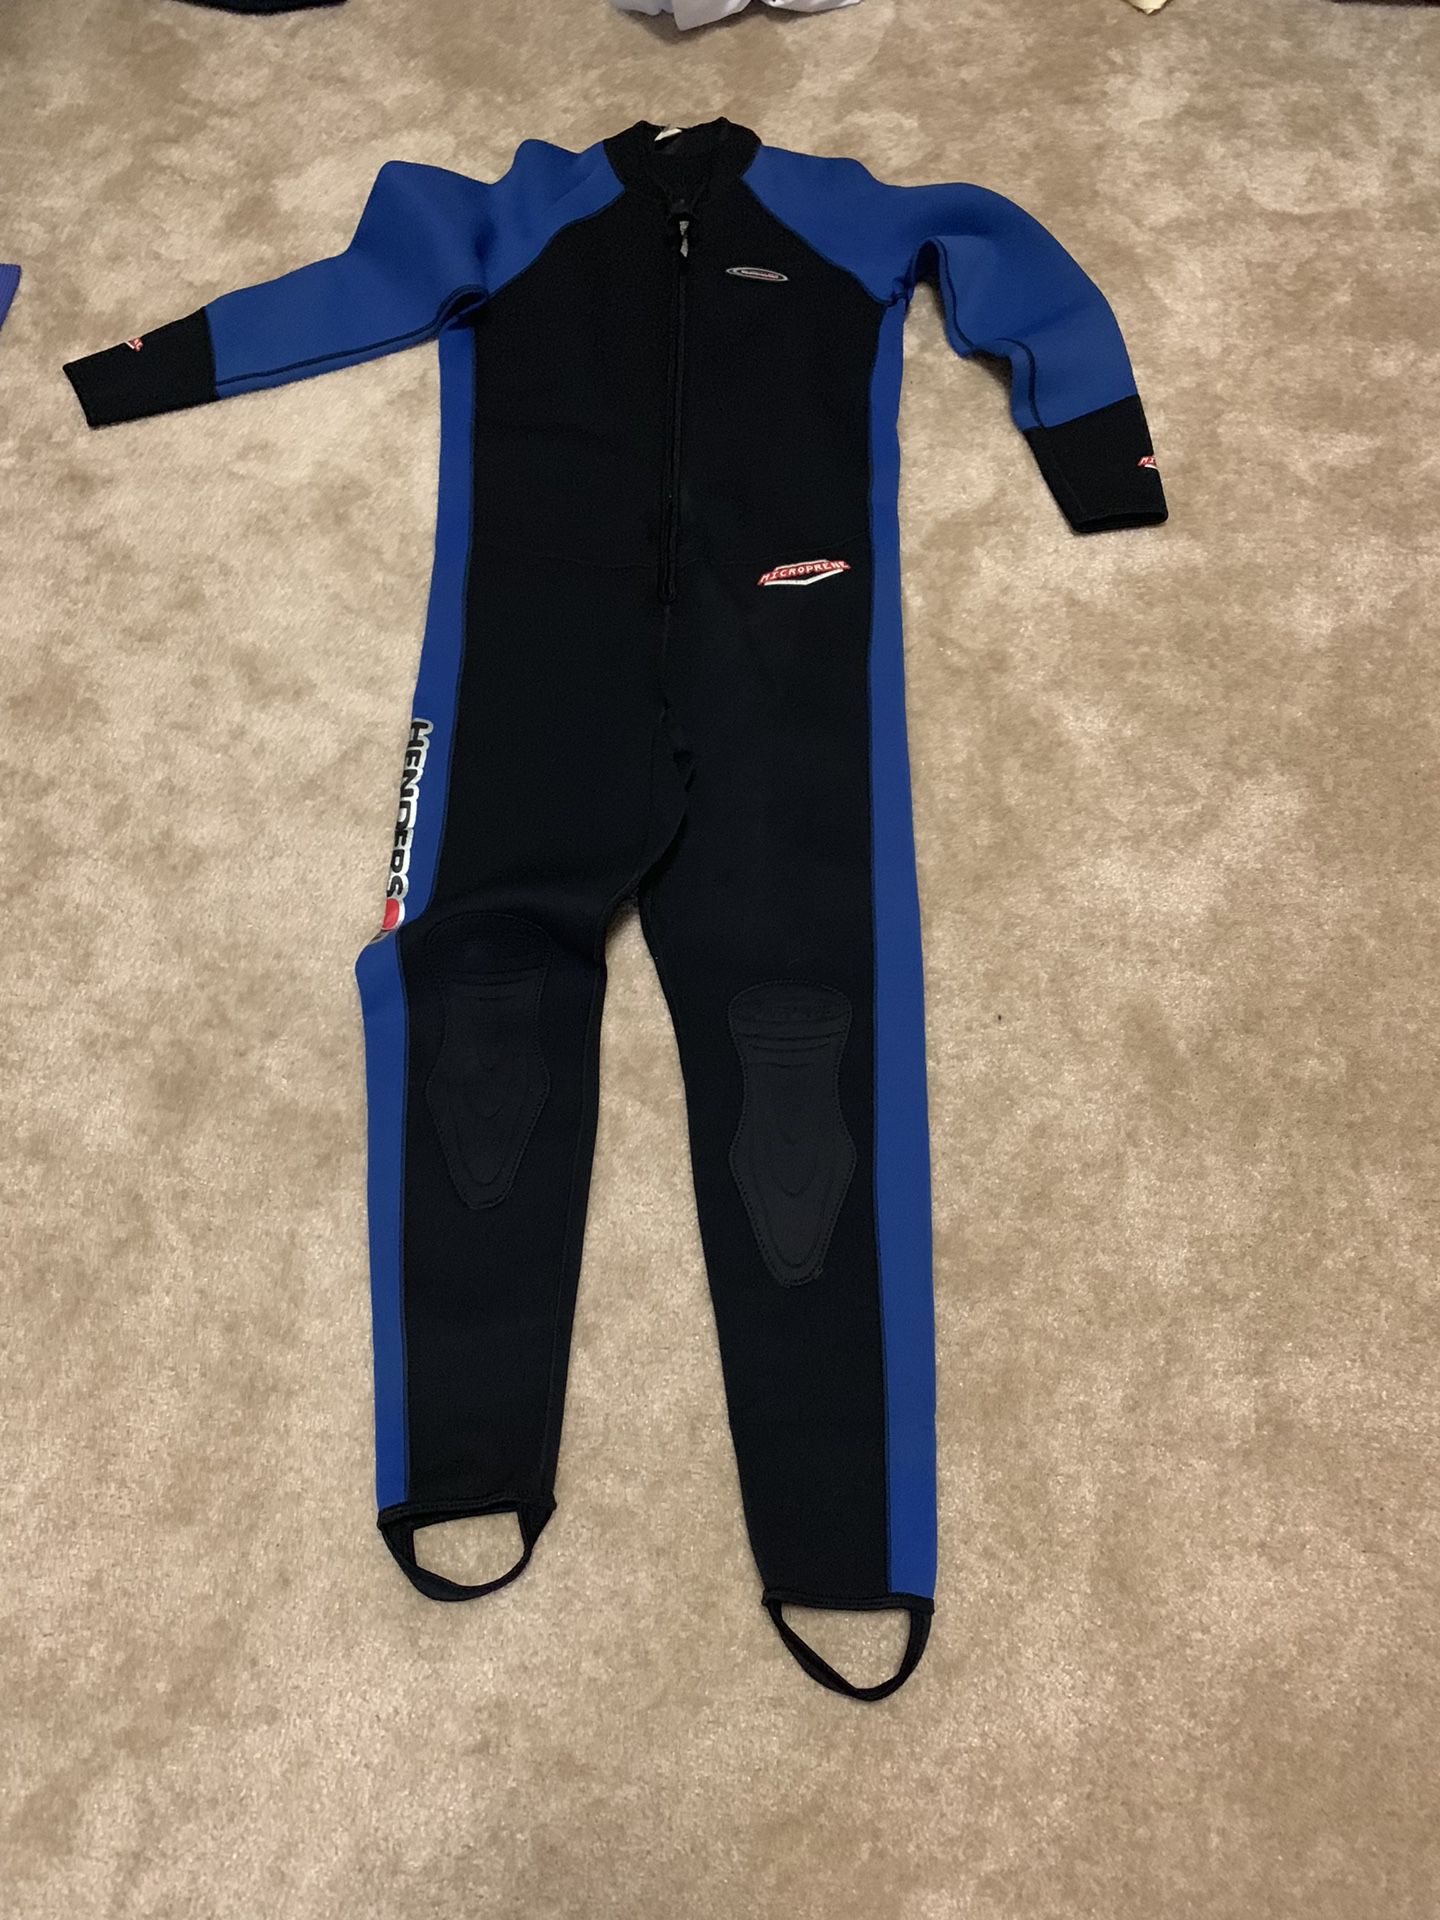 XL diving suit